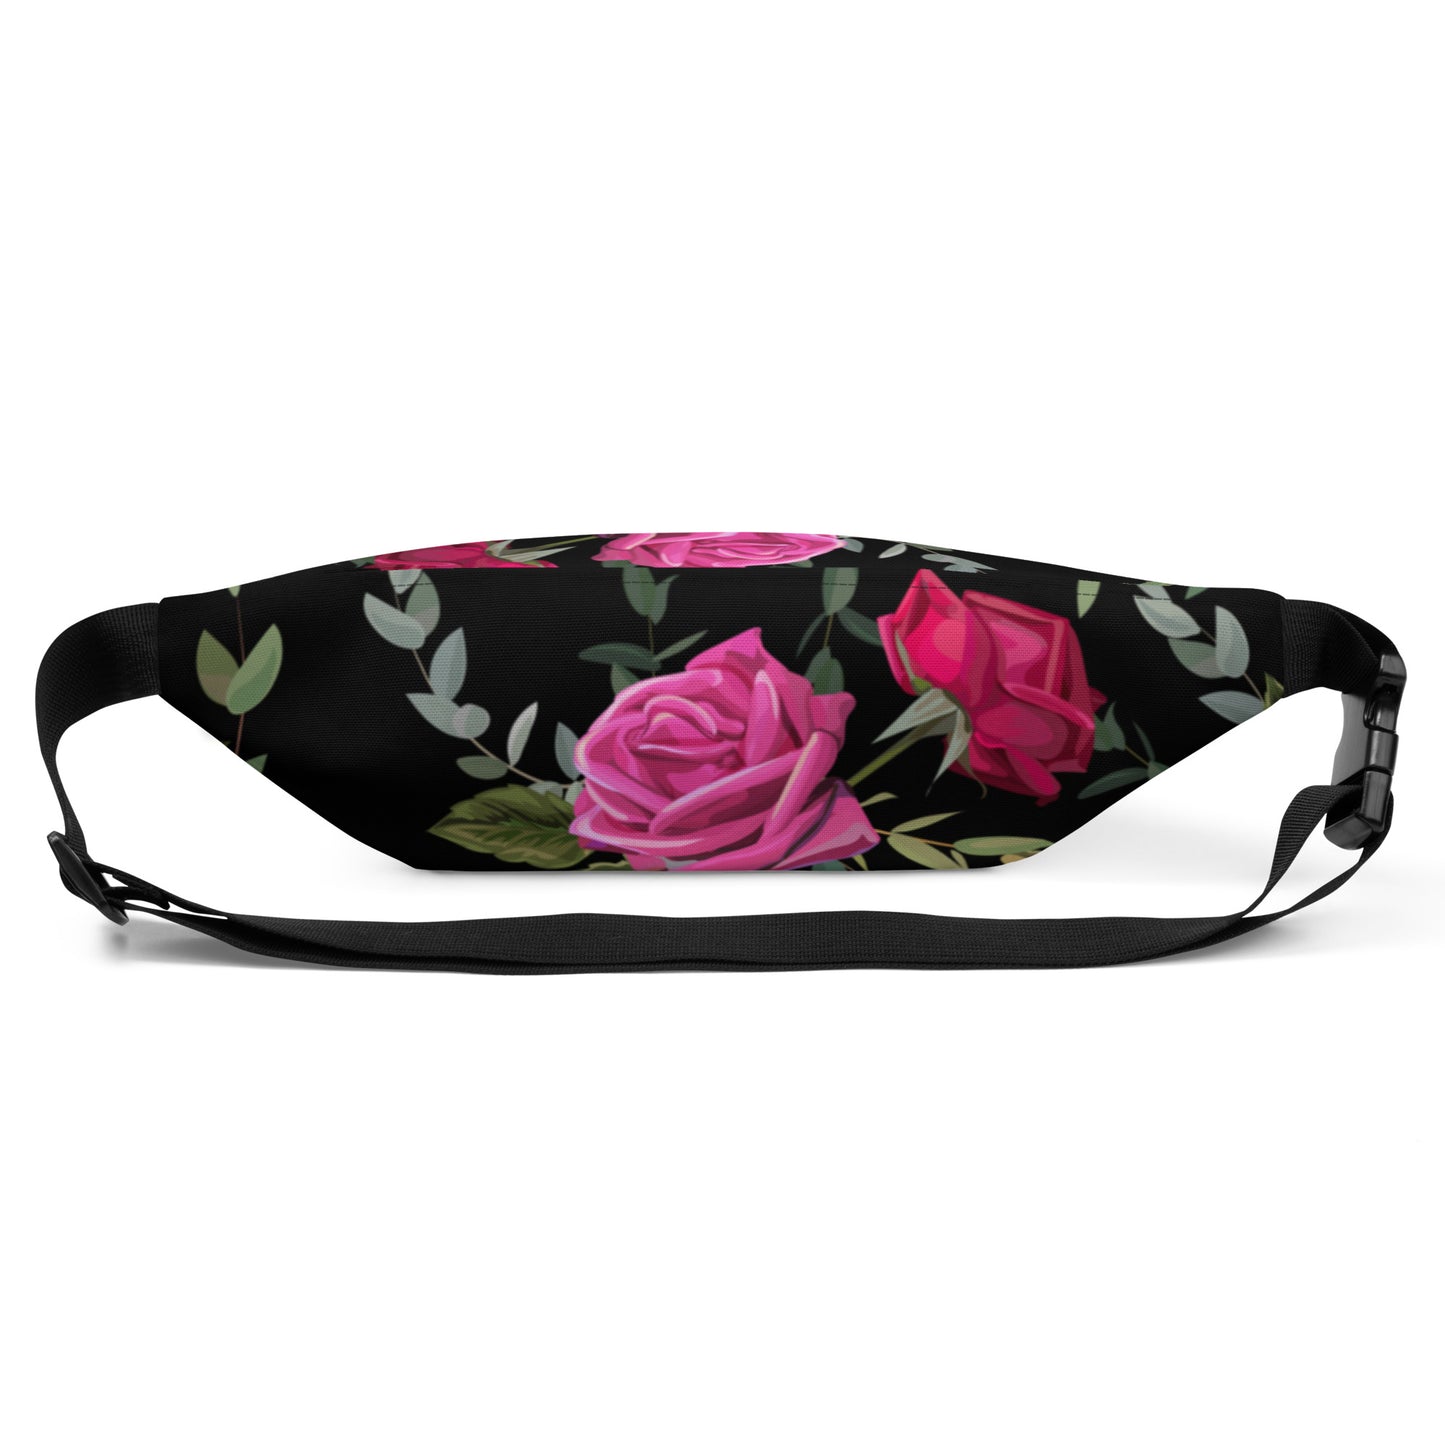 Belt Bag in Floral Design